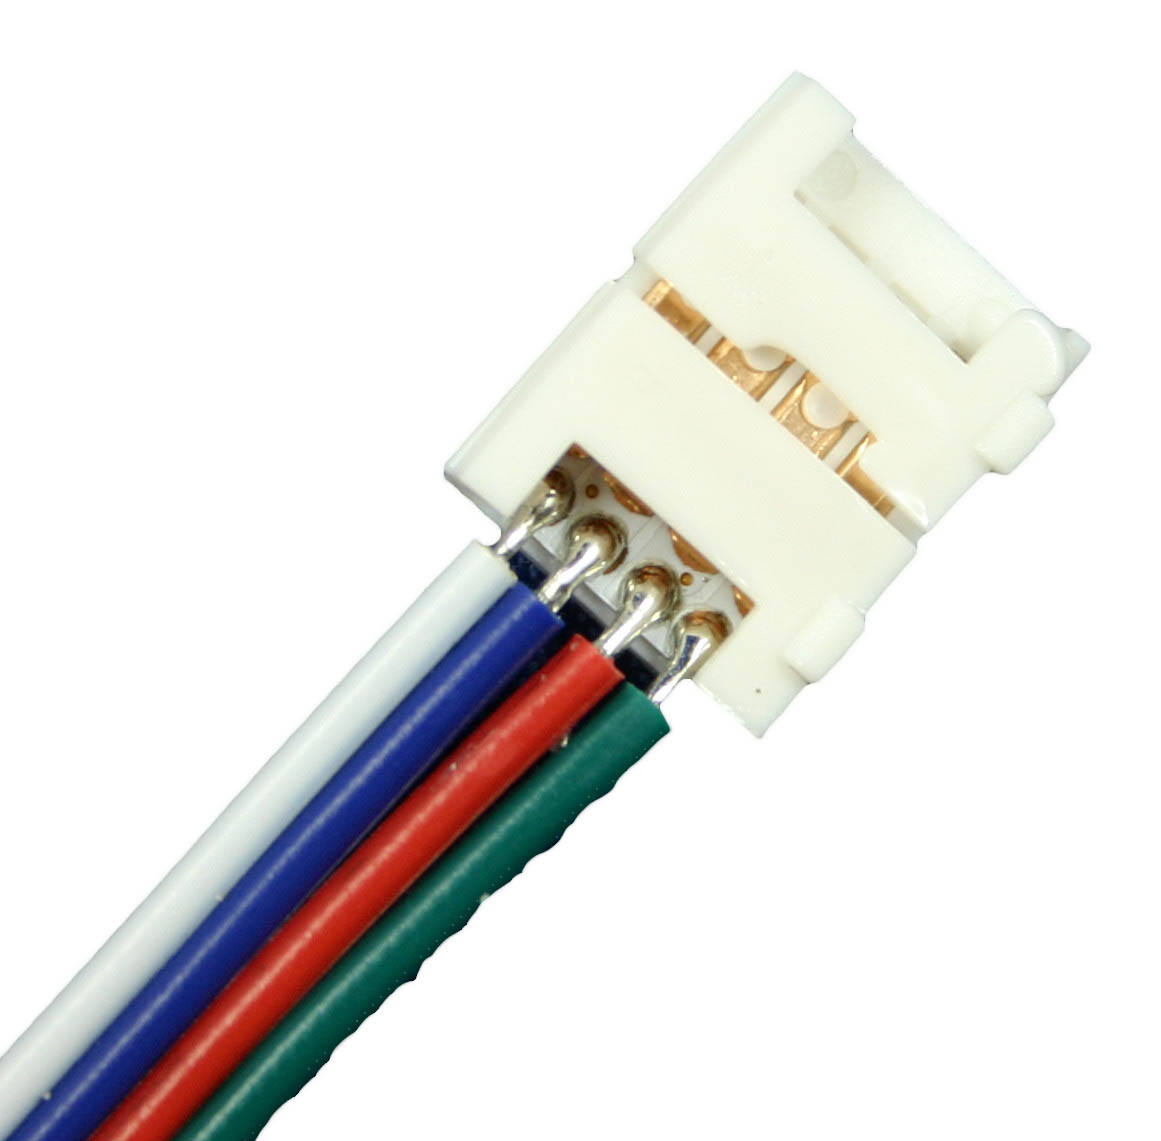  Artikelbild 2 des Artikels “Kabelverlängerung RGB Flexbänder “